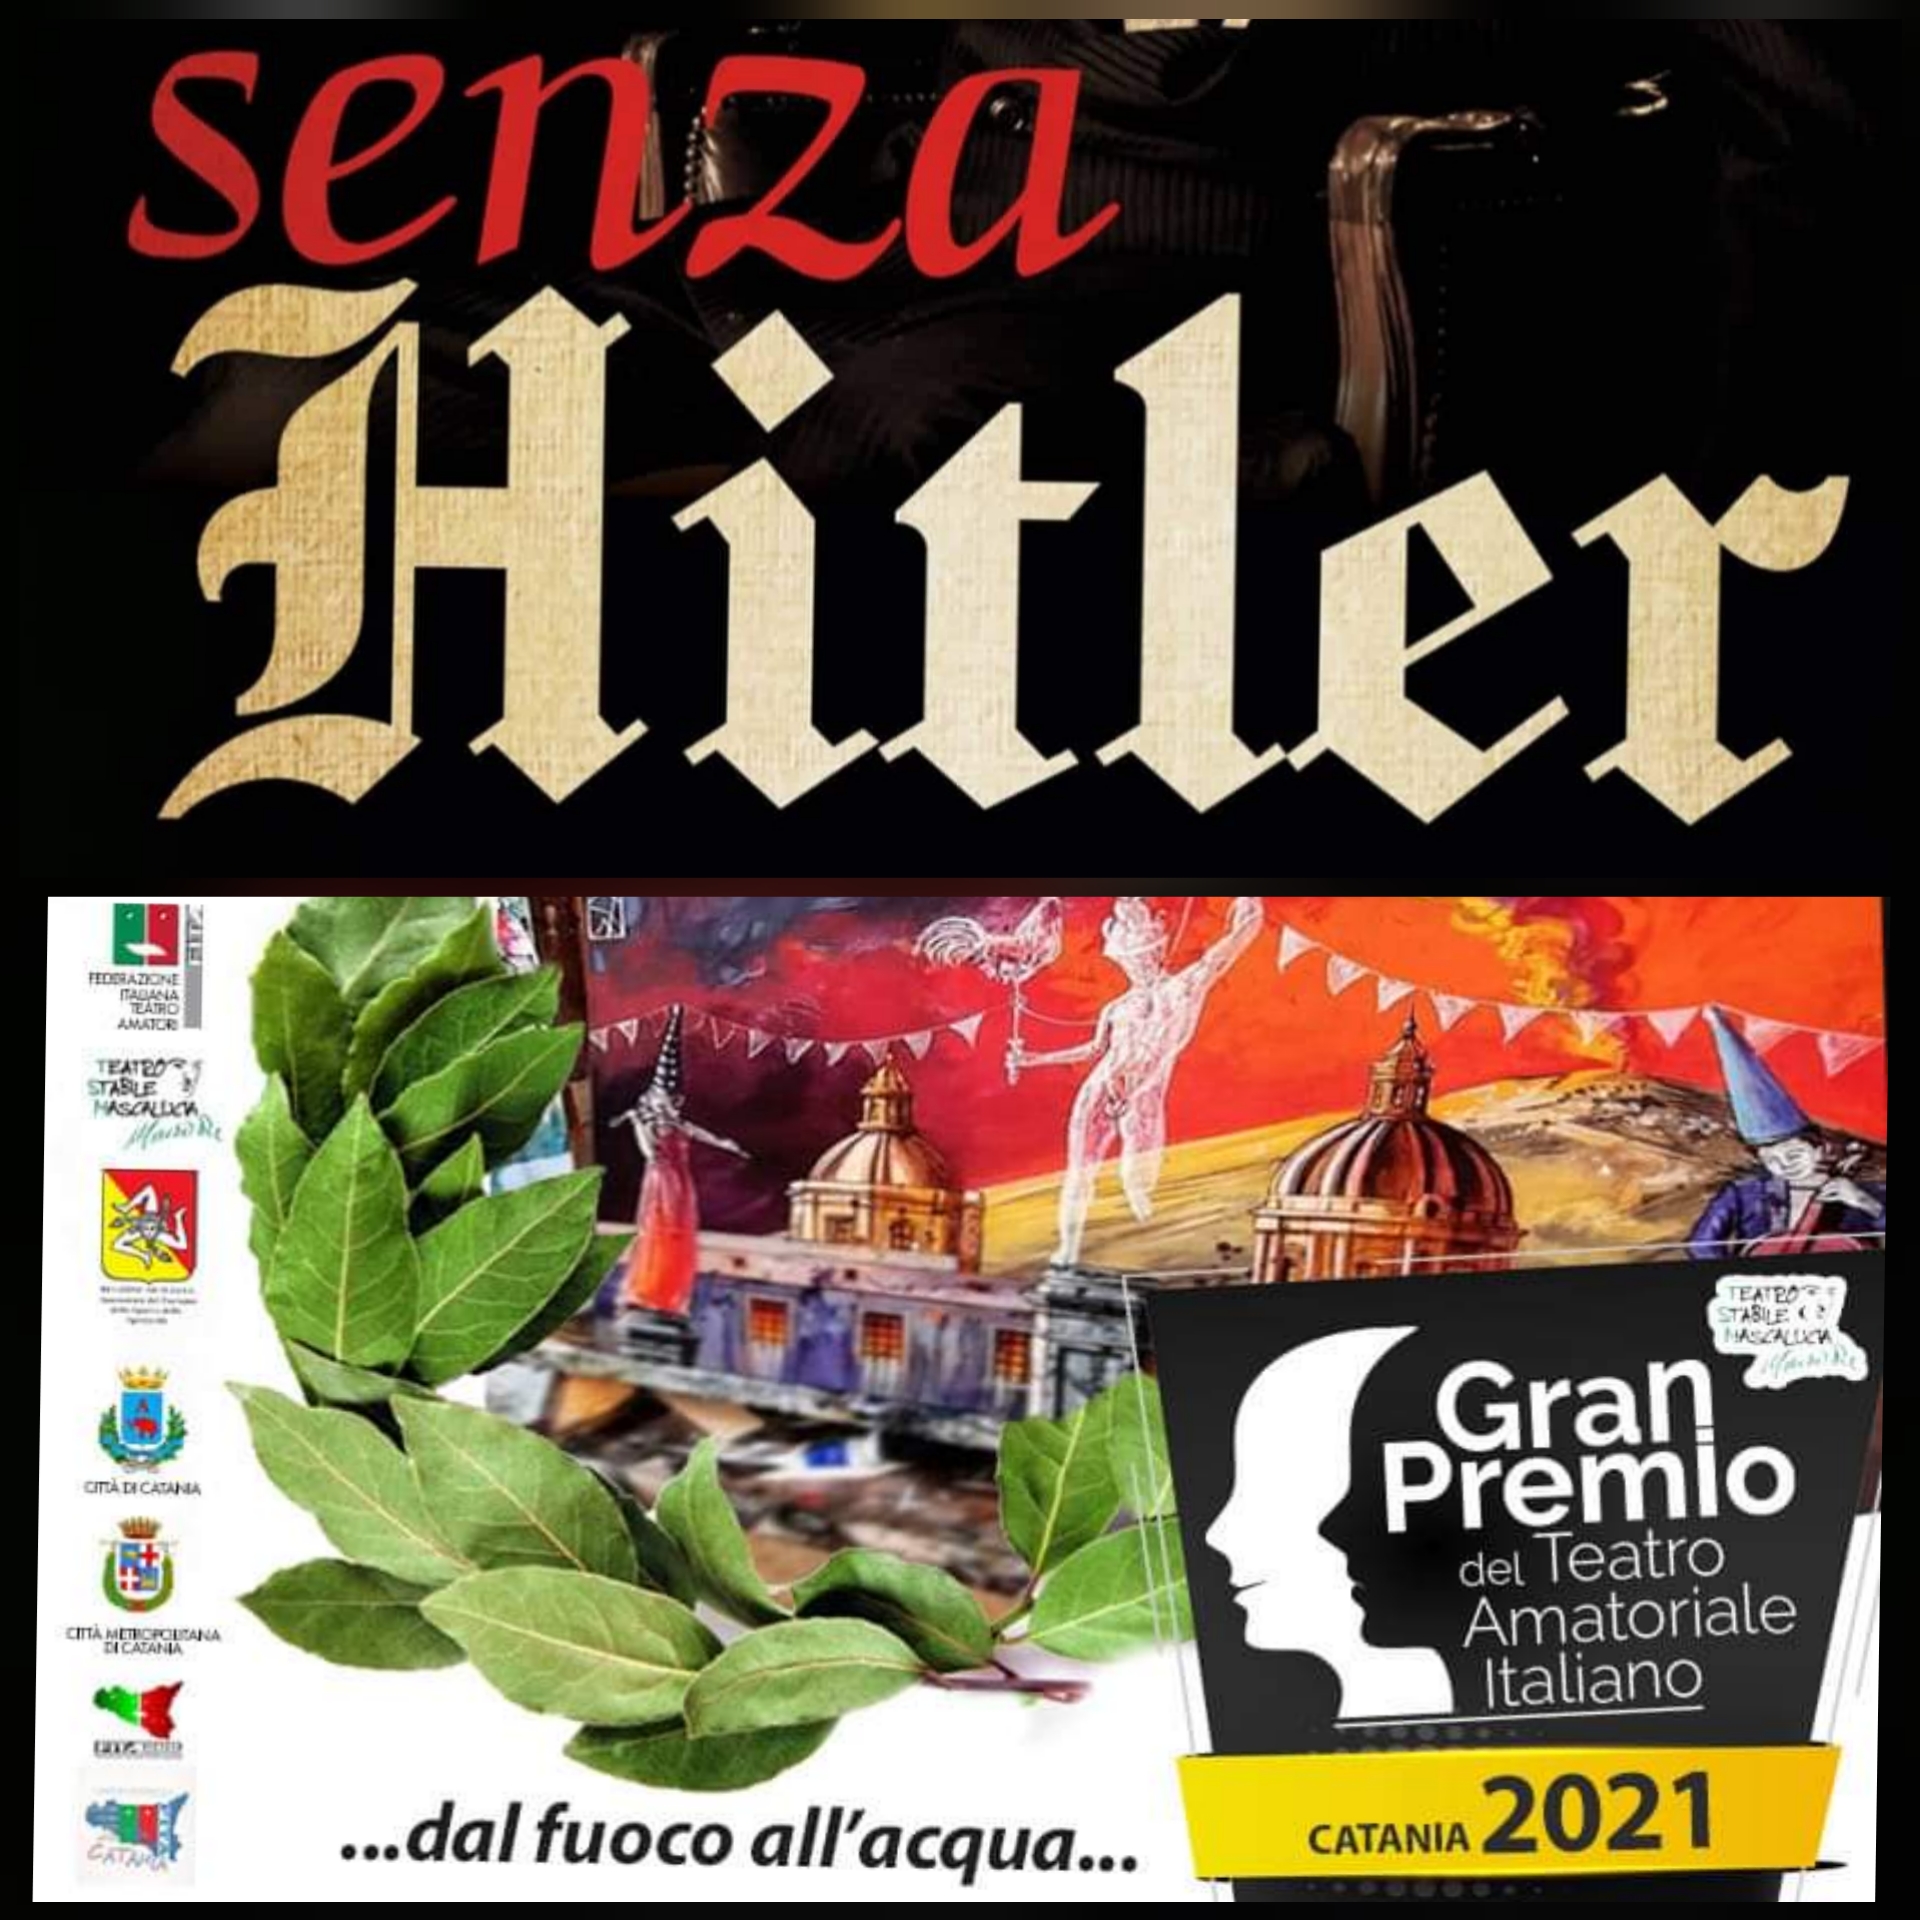 La Compagnia degli Evasi e il loro “Senza Hitler” si racconta al Gran Premio del Teatro Amatoriale”